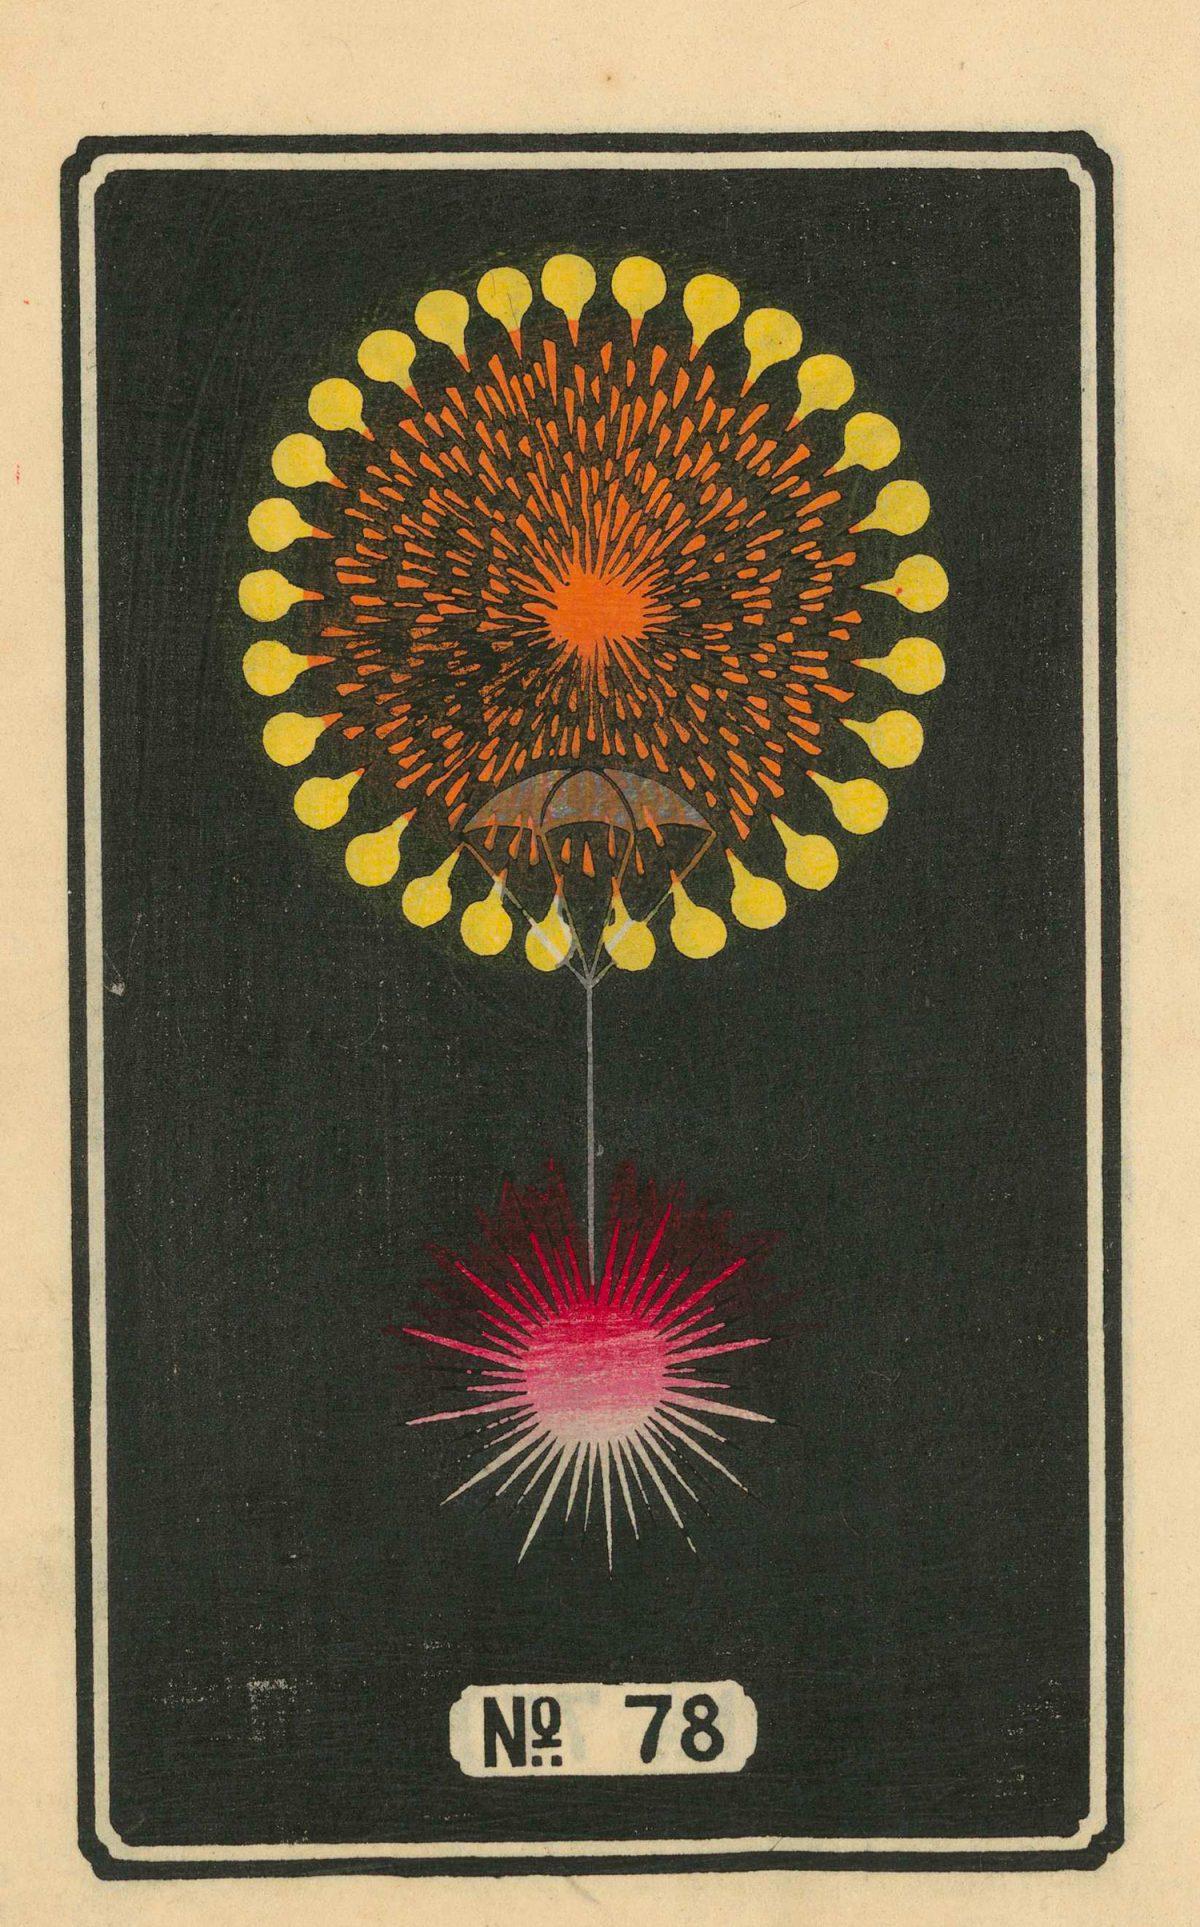 Superbes illustrations de feux d'artifice japonais de la fin des années 1800